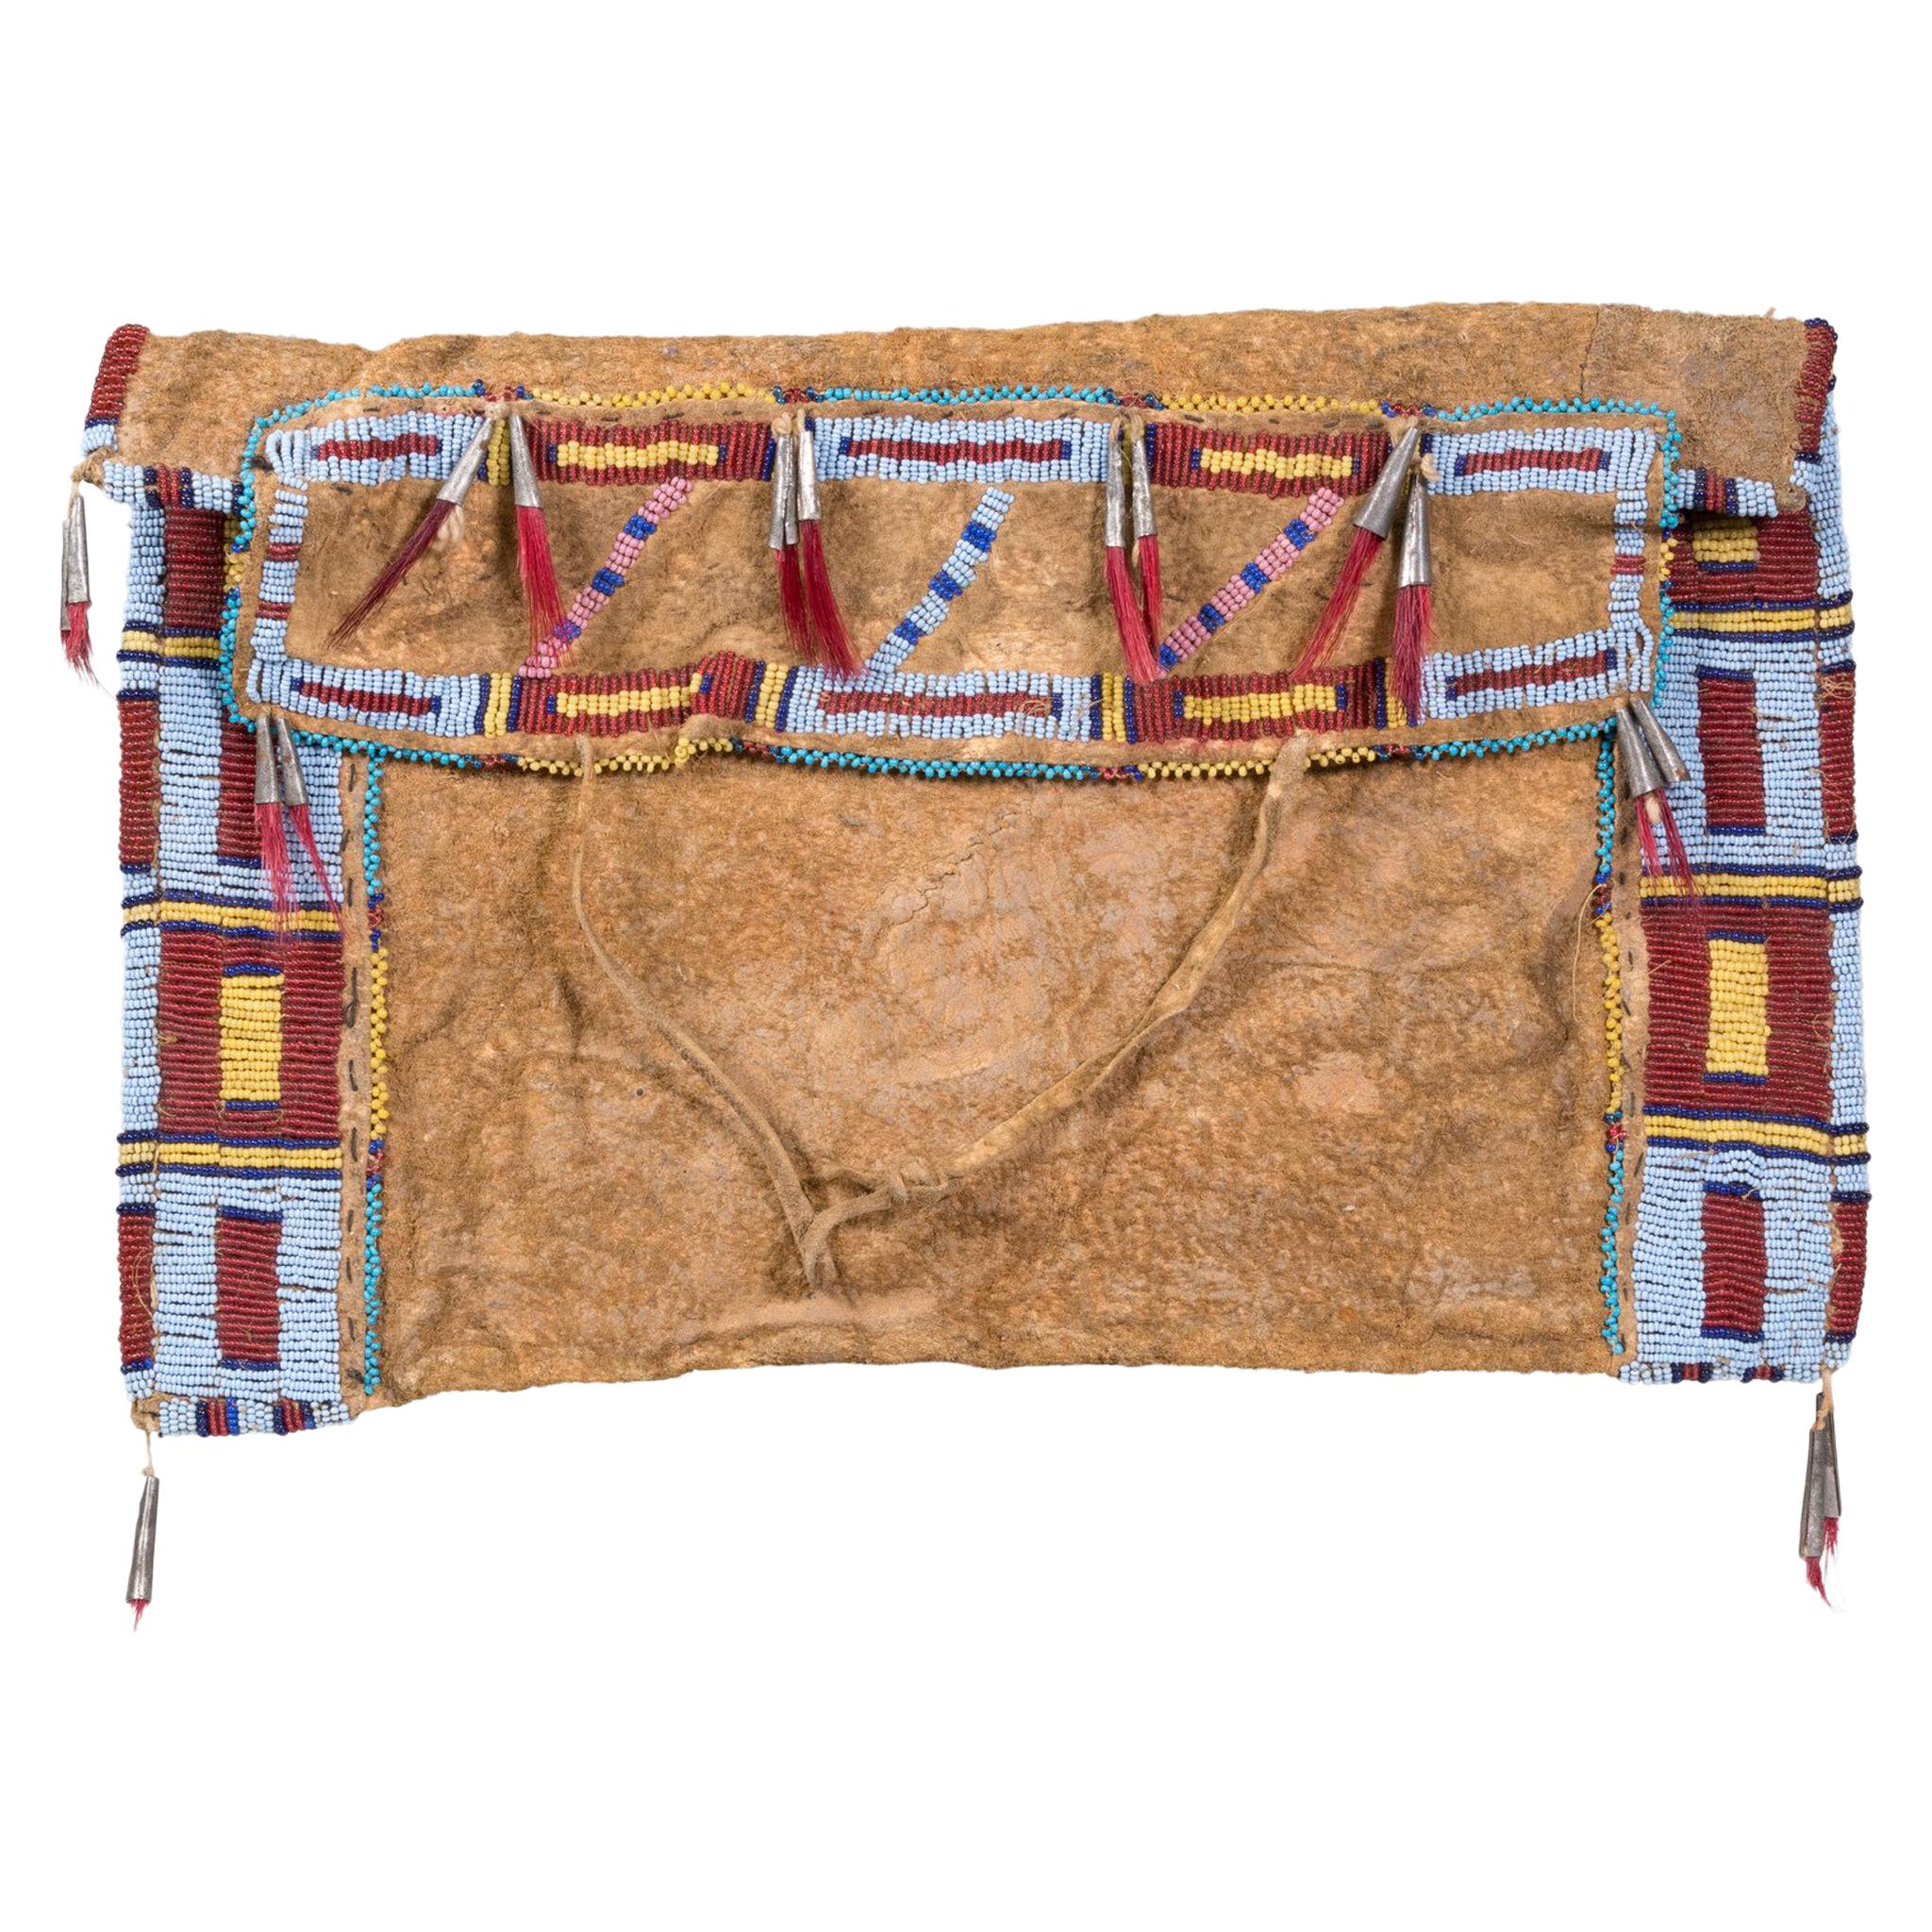 Sac de travail des Sioux Hidatsa de Fort Berthold, Dakota du Nord. Il s'agit d'un sac de travail pour femme qui servait à contenir du matériel de couture, des tendons, des alènes et des perles. Fil tendu cousu sur de la peau de veau de buffle tannée